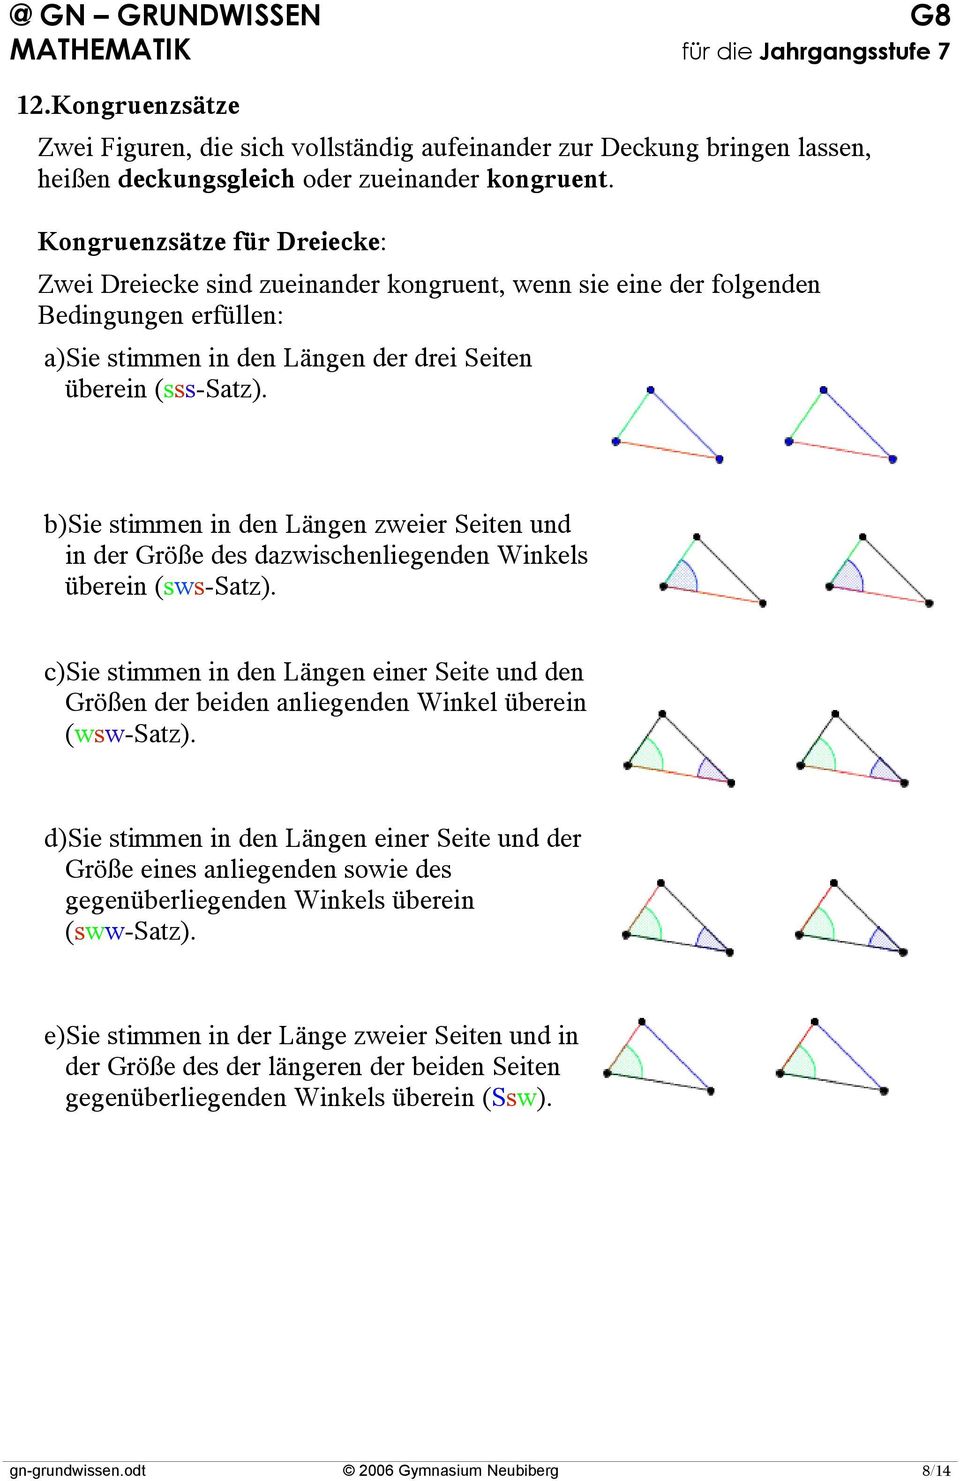 b)sie stimmen in den Längen zweier Seiten und in der Größe des dazwischenliegenden Winkels überein (sws-satz).